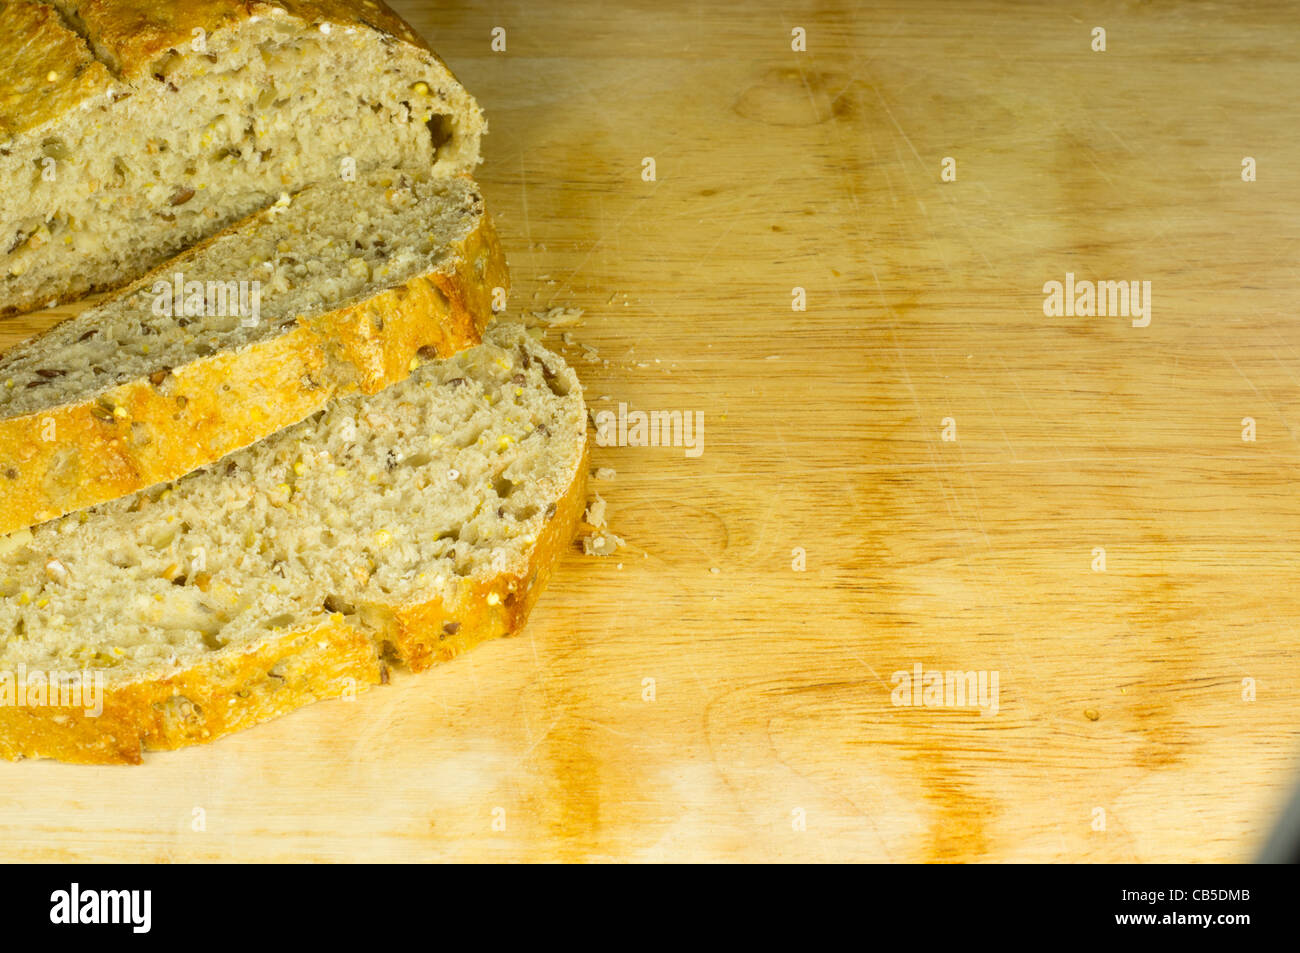 sliced whole grain bread Stock Photo